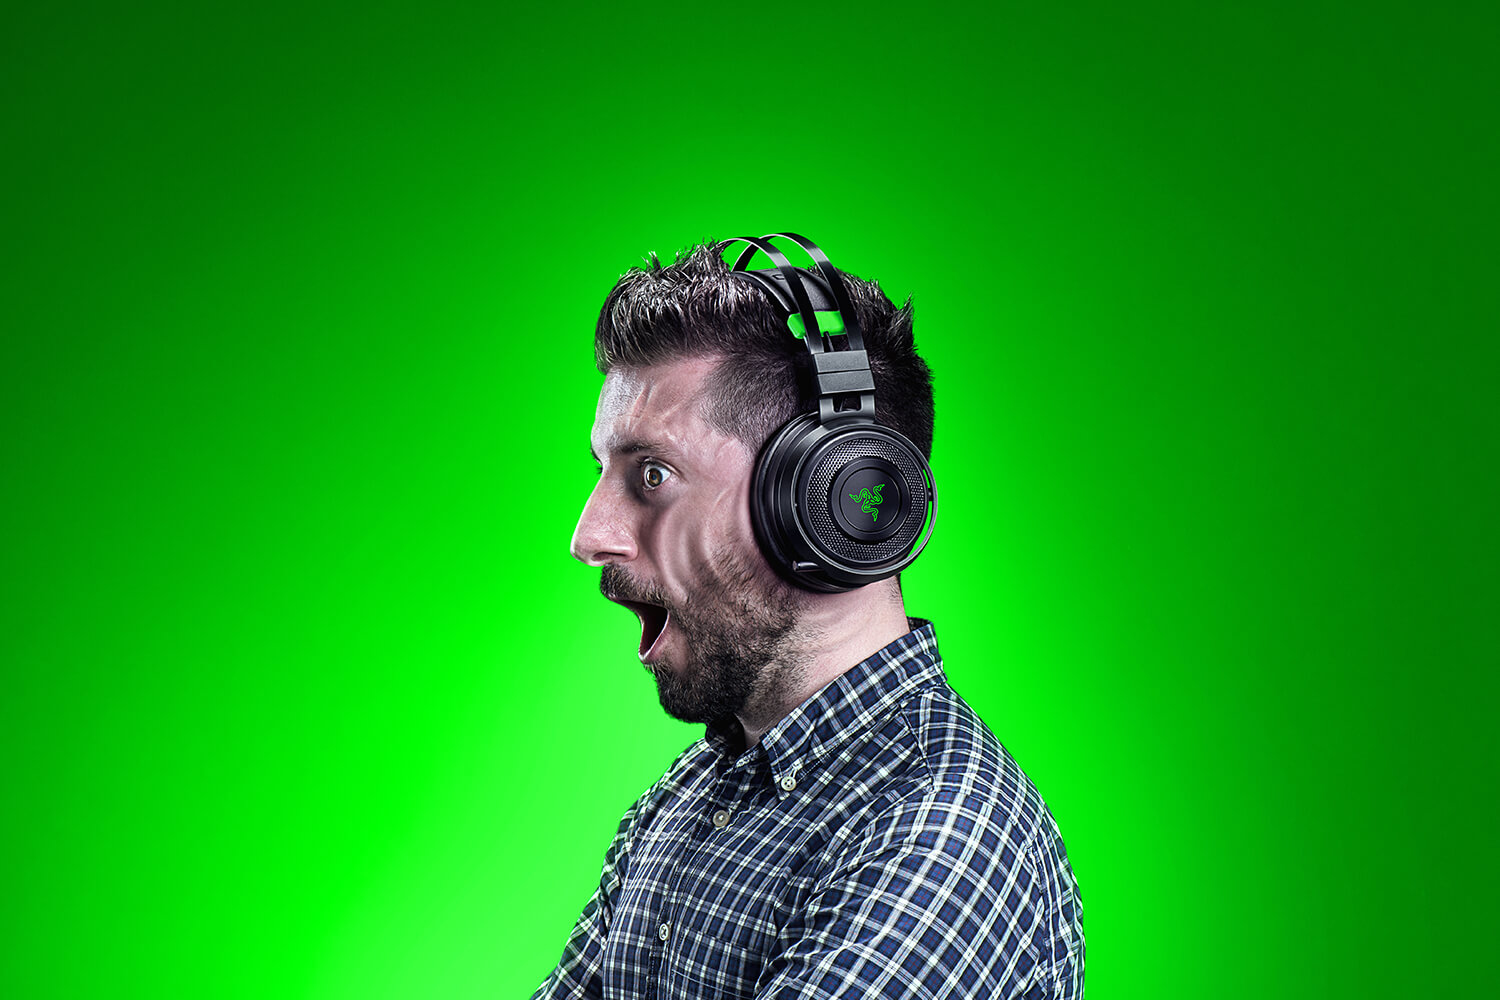 Razer Nari Ultimate Hyperssense kabelloses Gaming Headset für Xbox schwarz grün